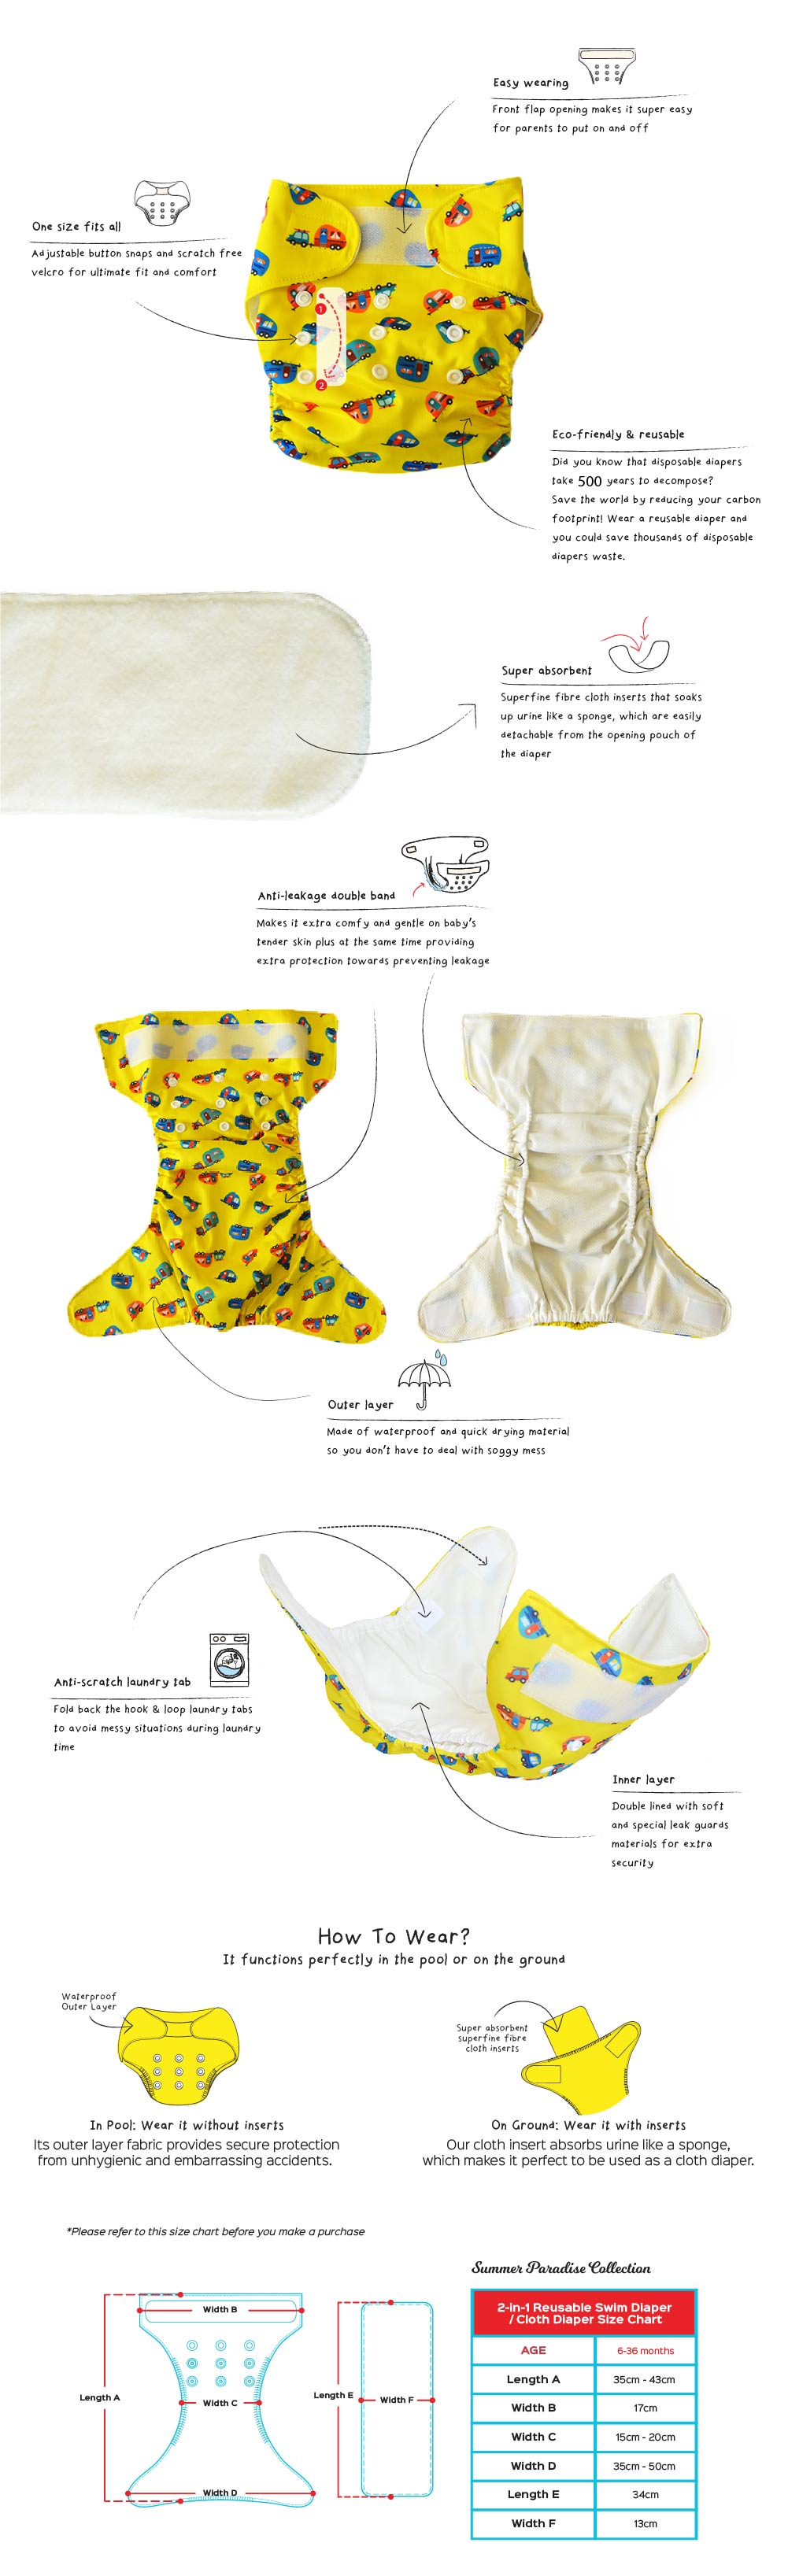 Cheekaaboo 2-in-1 Reusable Swim Diaper / Cloth Diaper - Flamingo  (6-36 months) - Summer Paradise